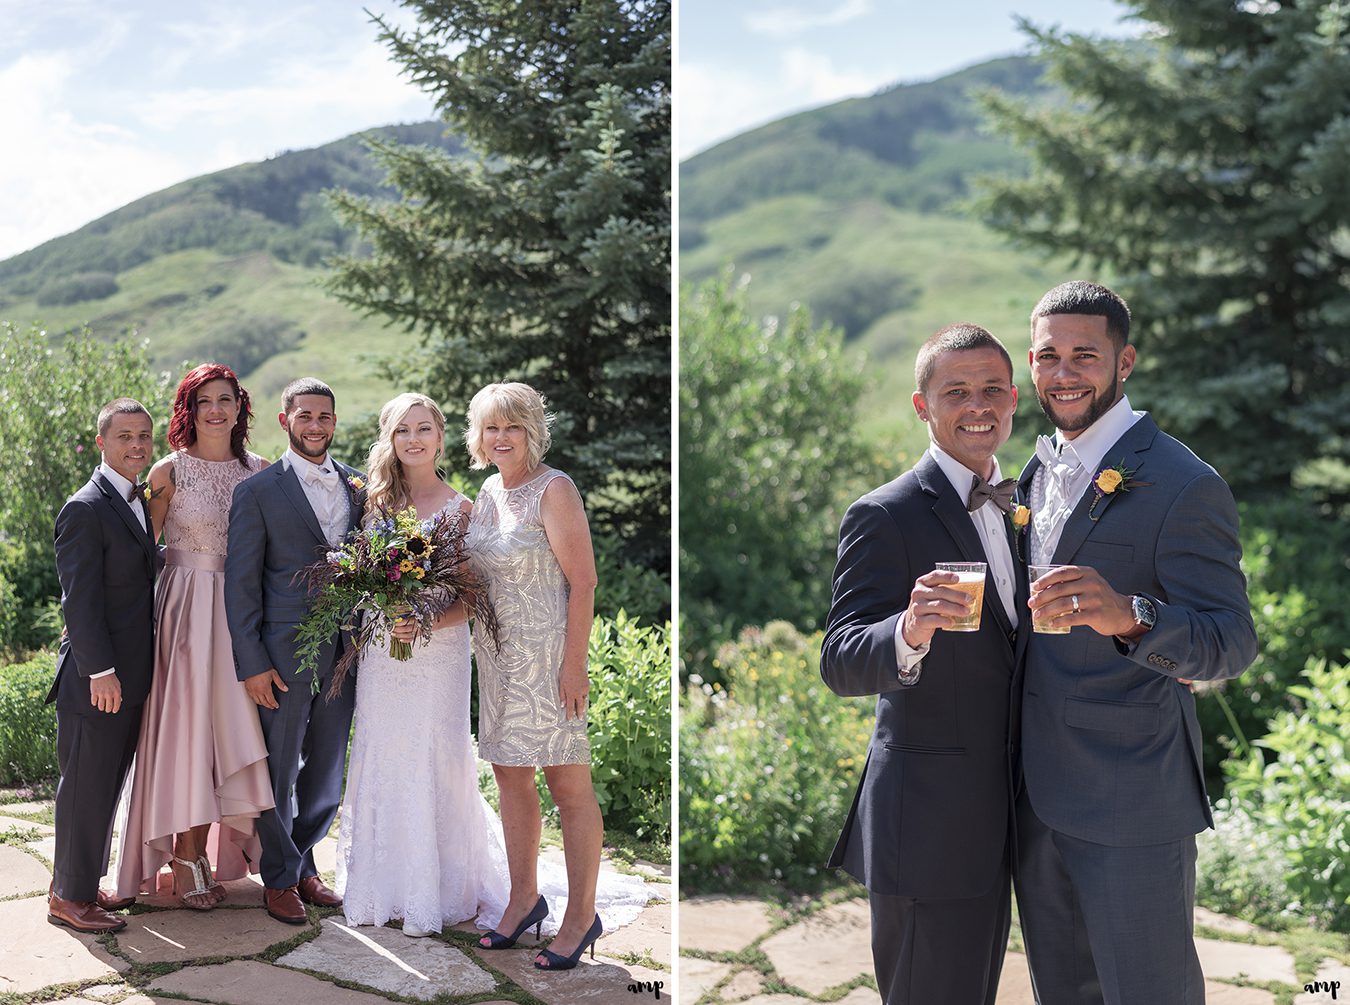 Family photos at the Crested Butte Mountain Wedding Garden